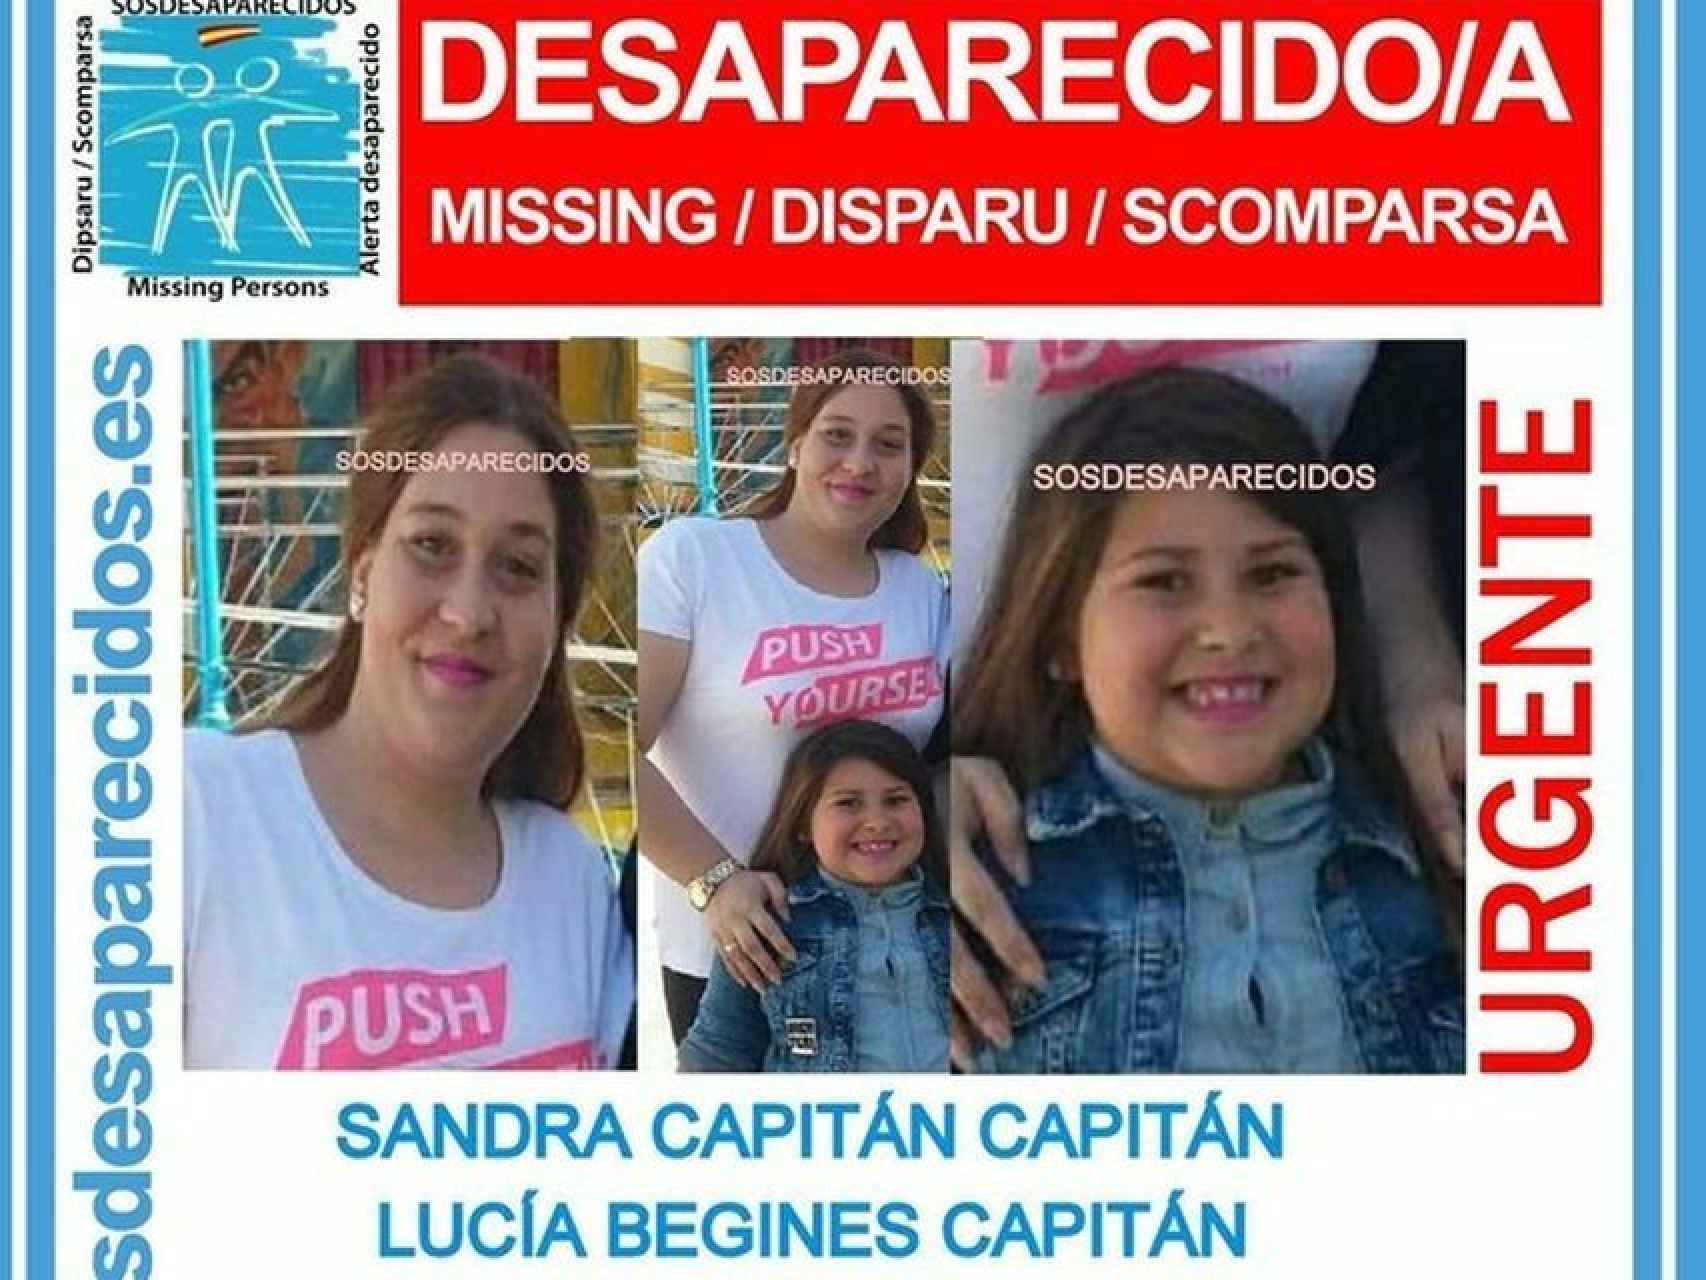 Cartel que anuncia la desaparición de Sandra Capitán y Lucía Begines